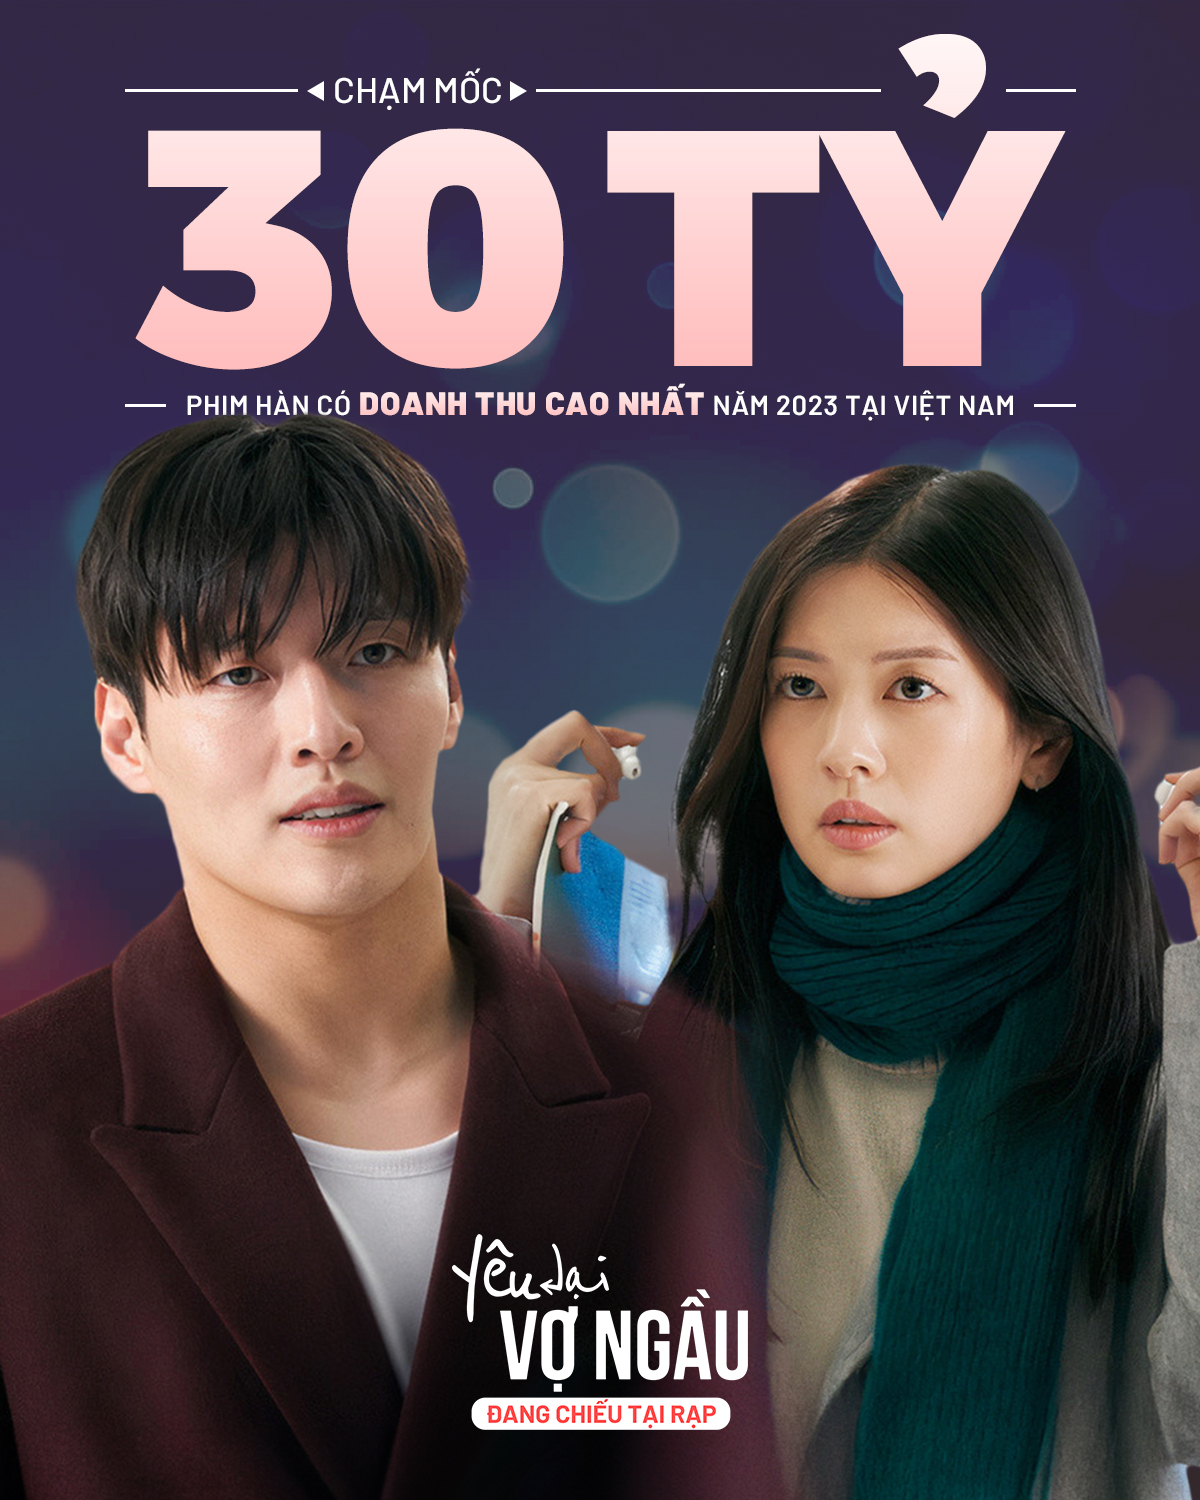 Phim Hàn Quốc 'Yêu lại vợ ngầu' có doanh thu cao nhất năm 2023 tại Việt Nam - 1